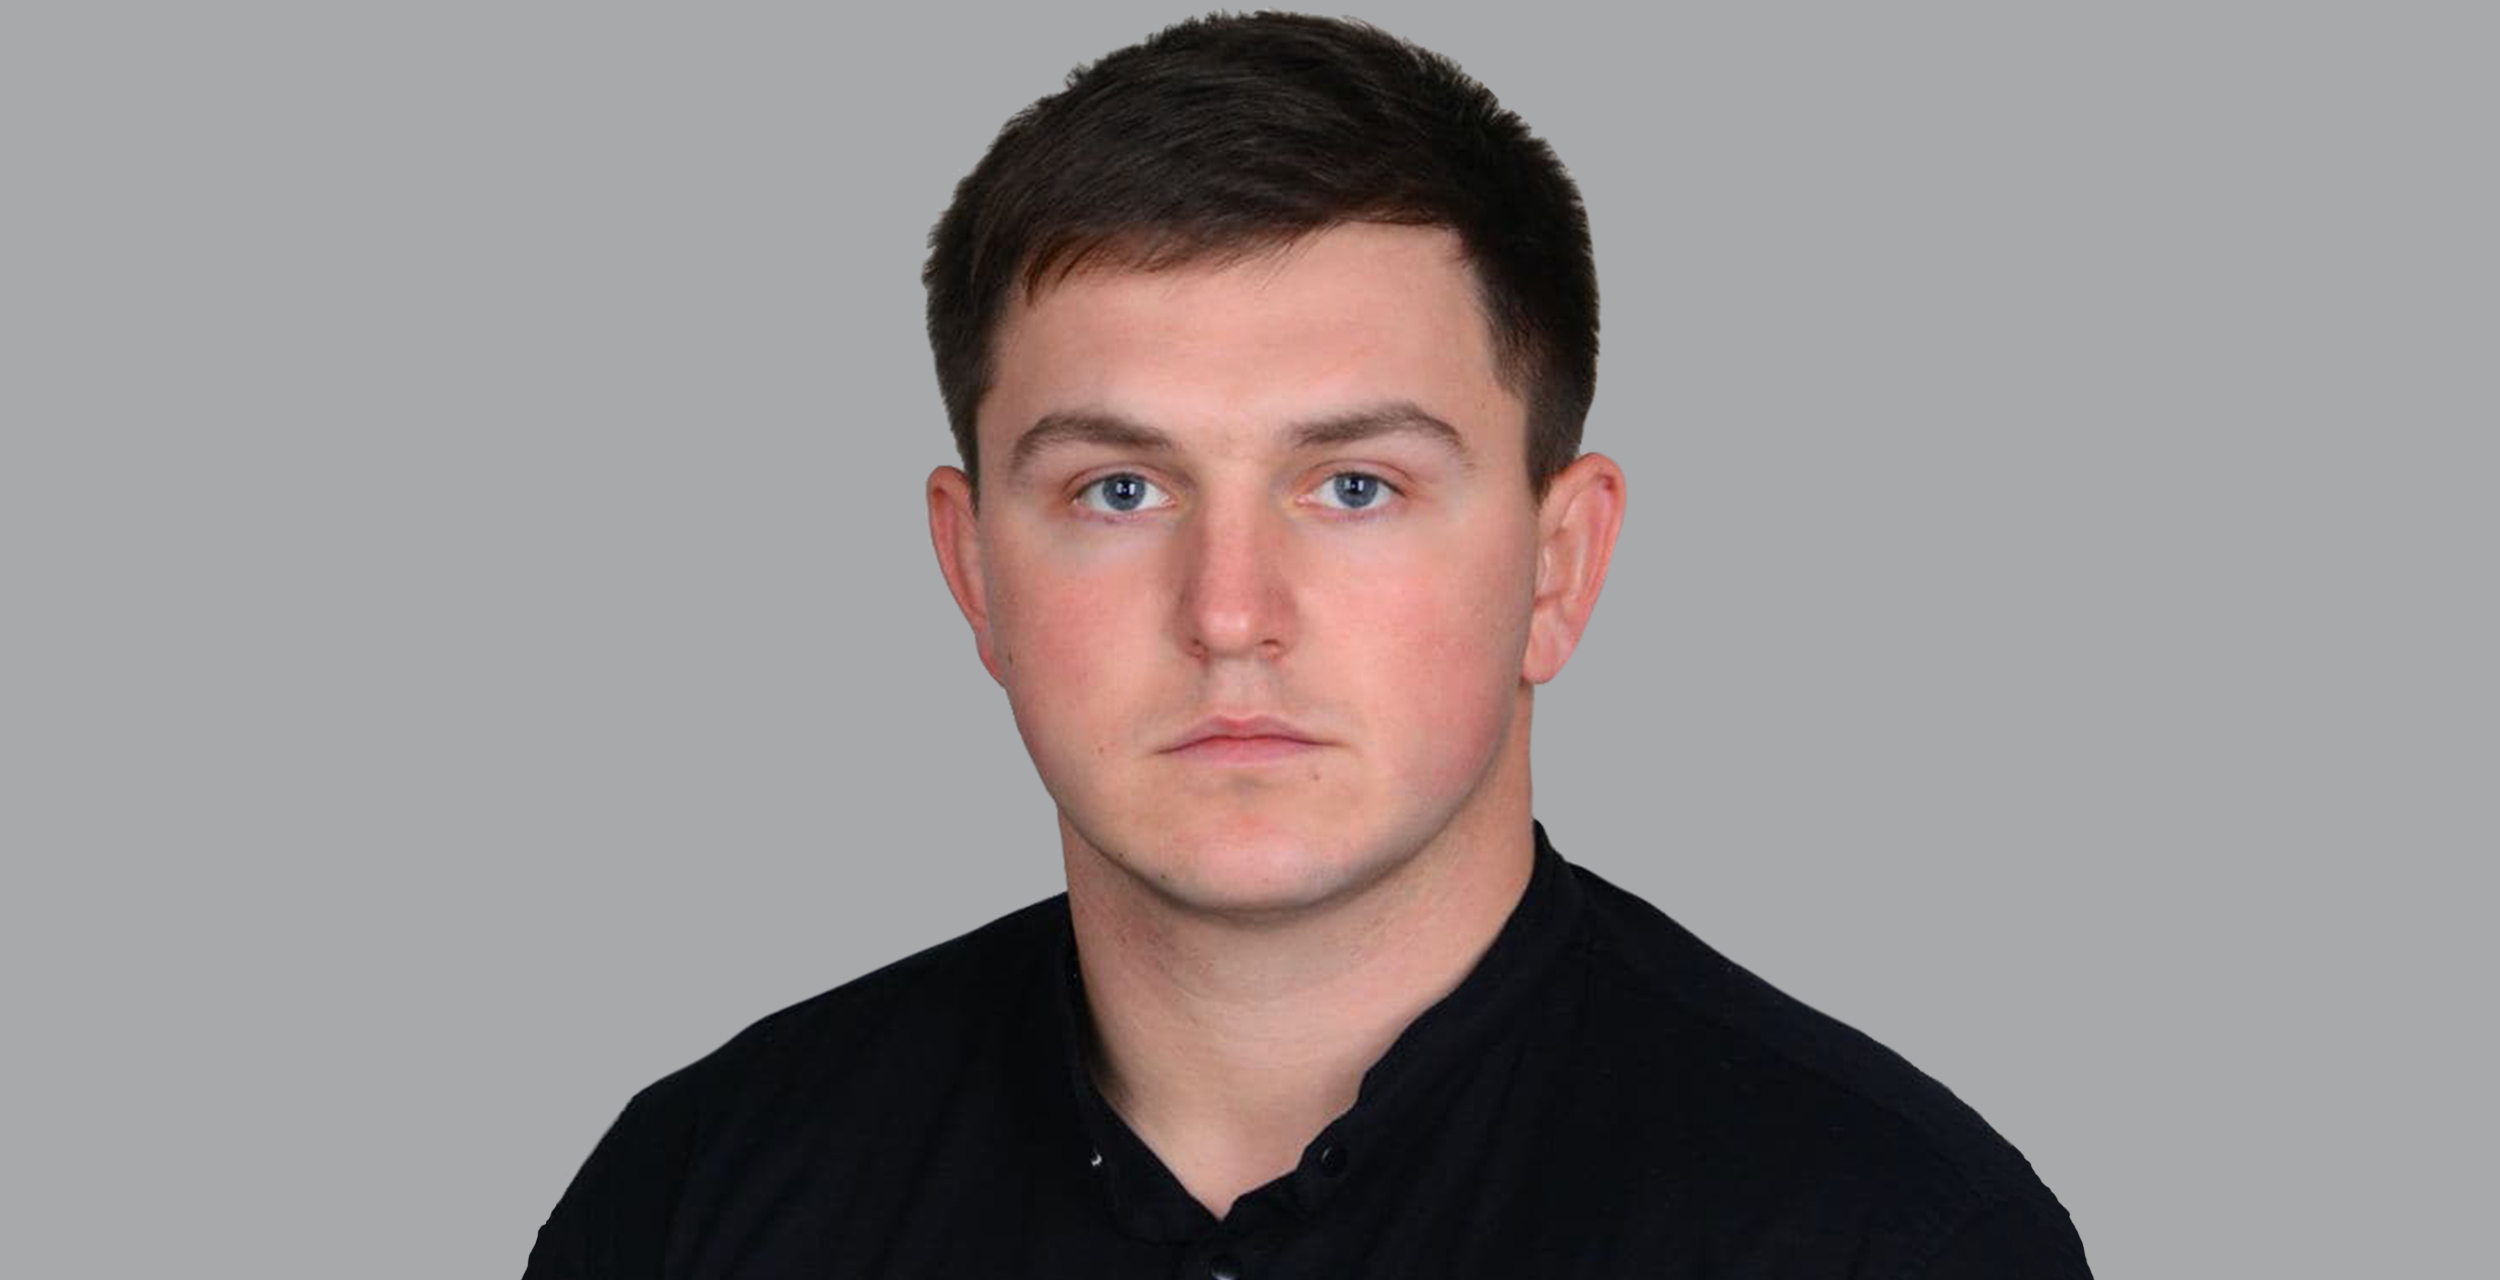 Олександр Лук'янчук, менеджер з технологічного супроводу компанії Lidea